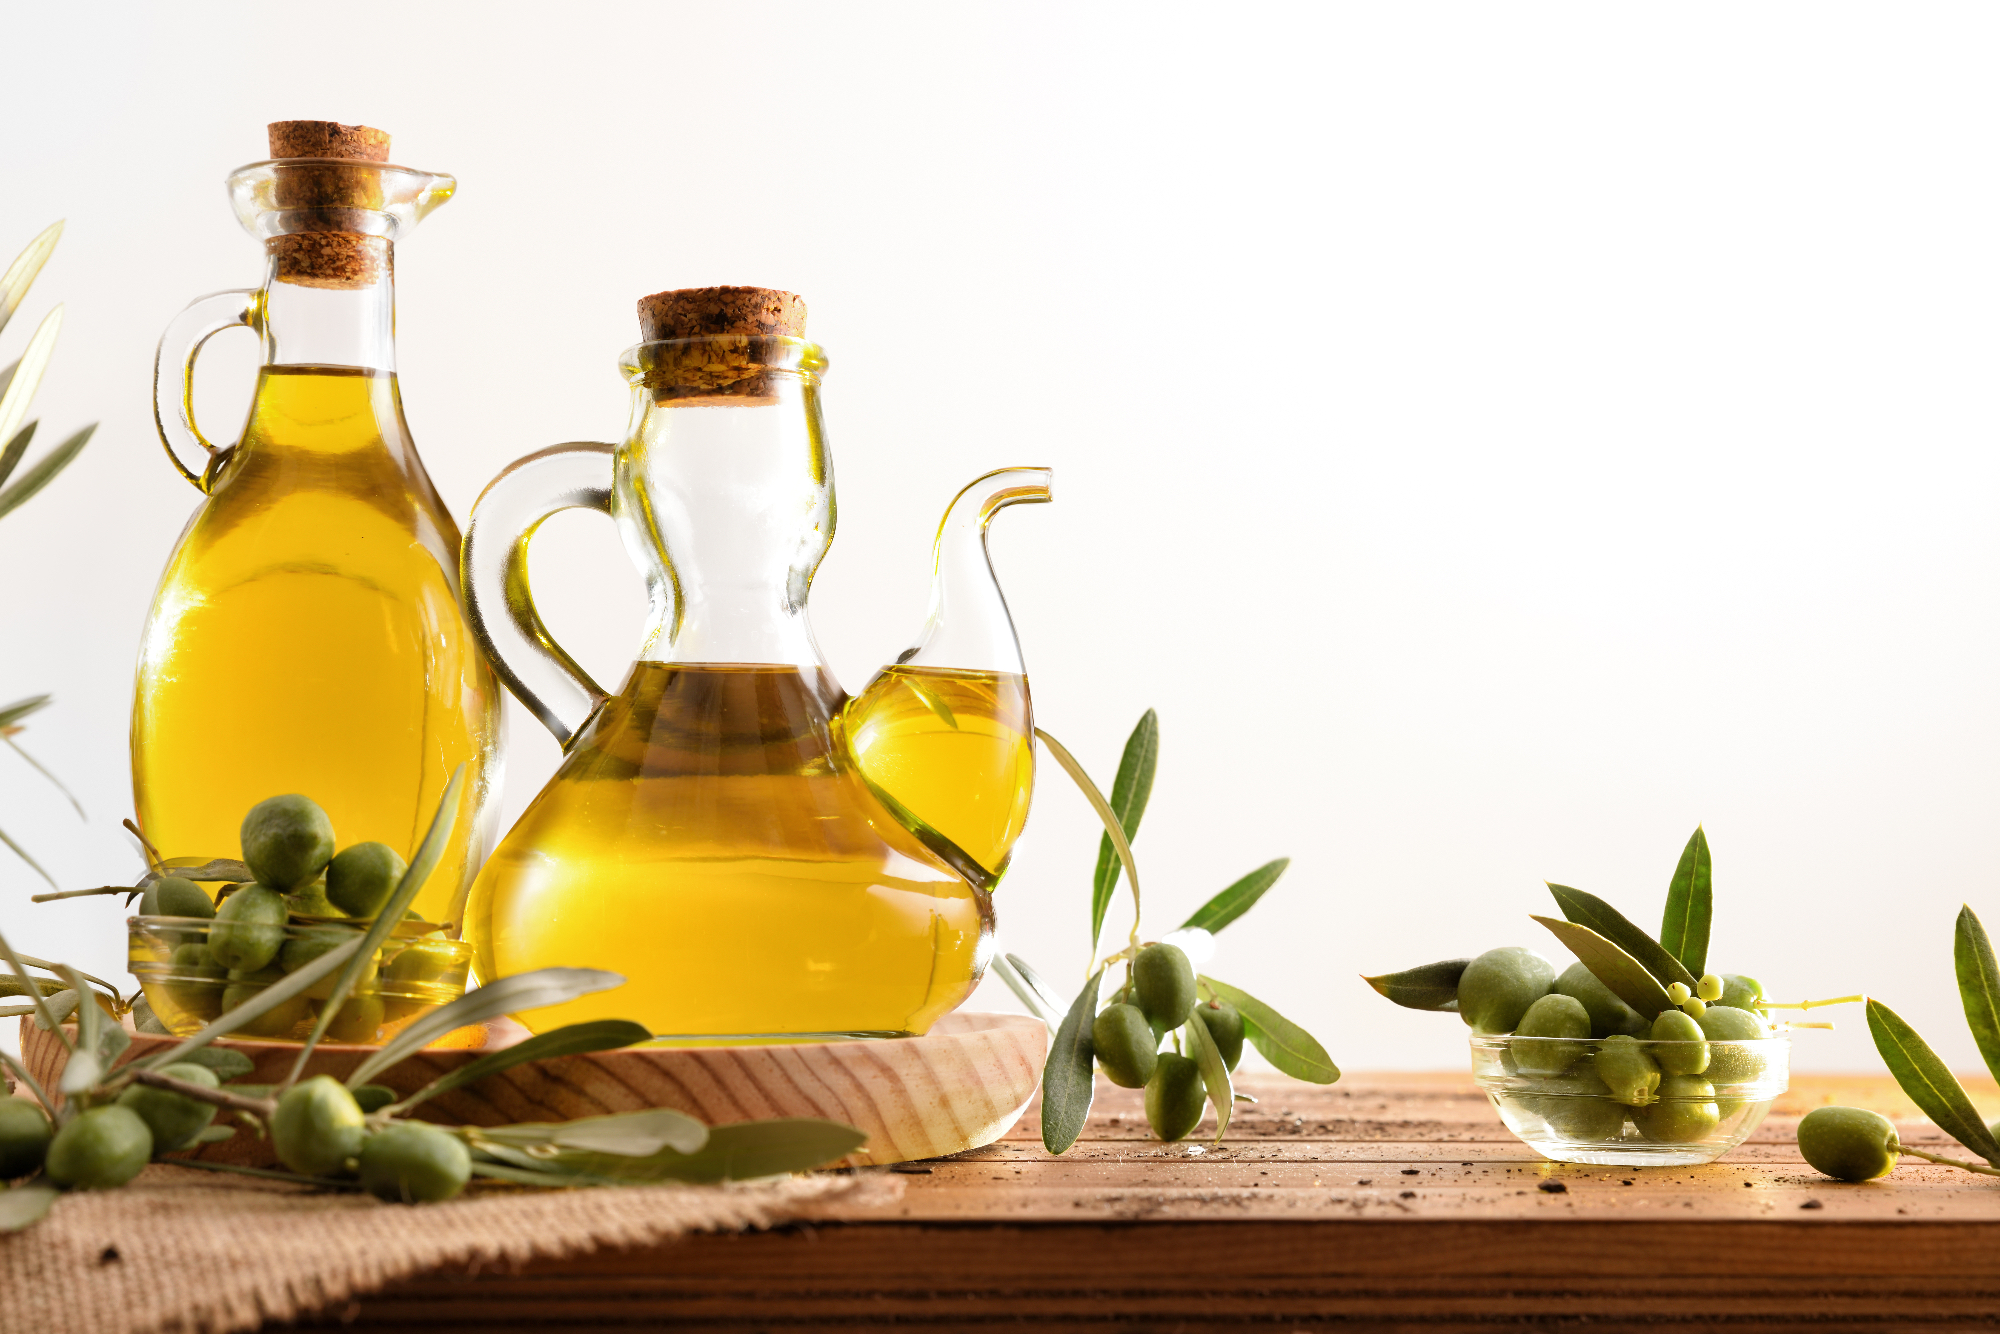 Ekstra deviško oljčno olje je zelo okusno in pa zdravo